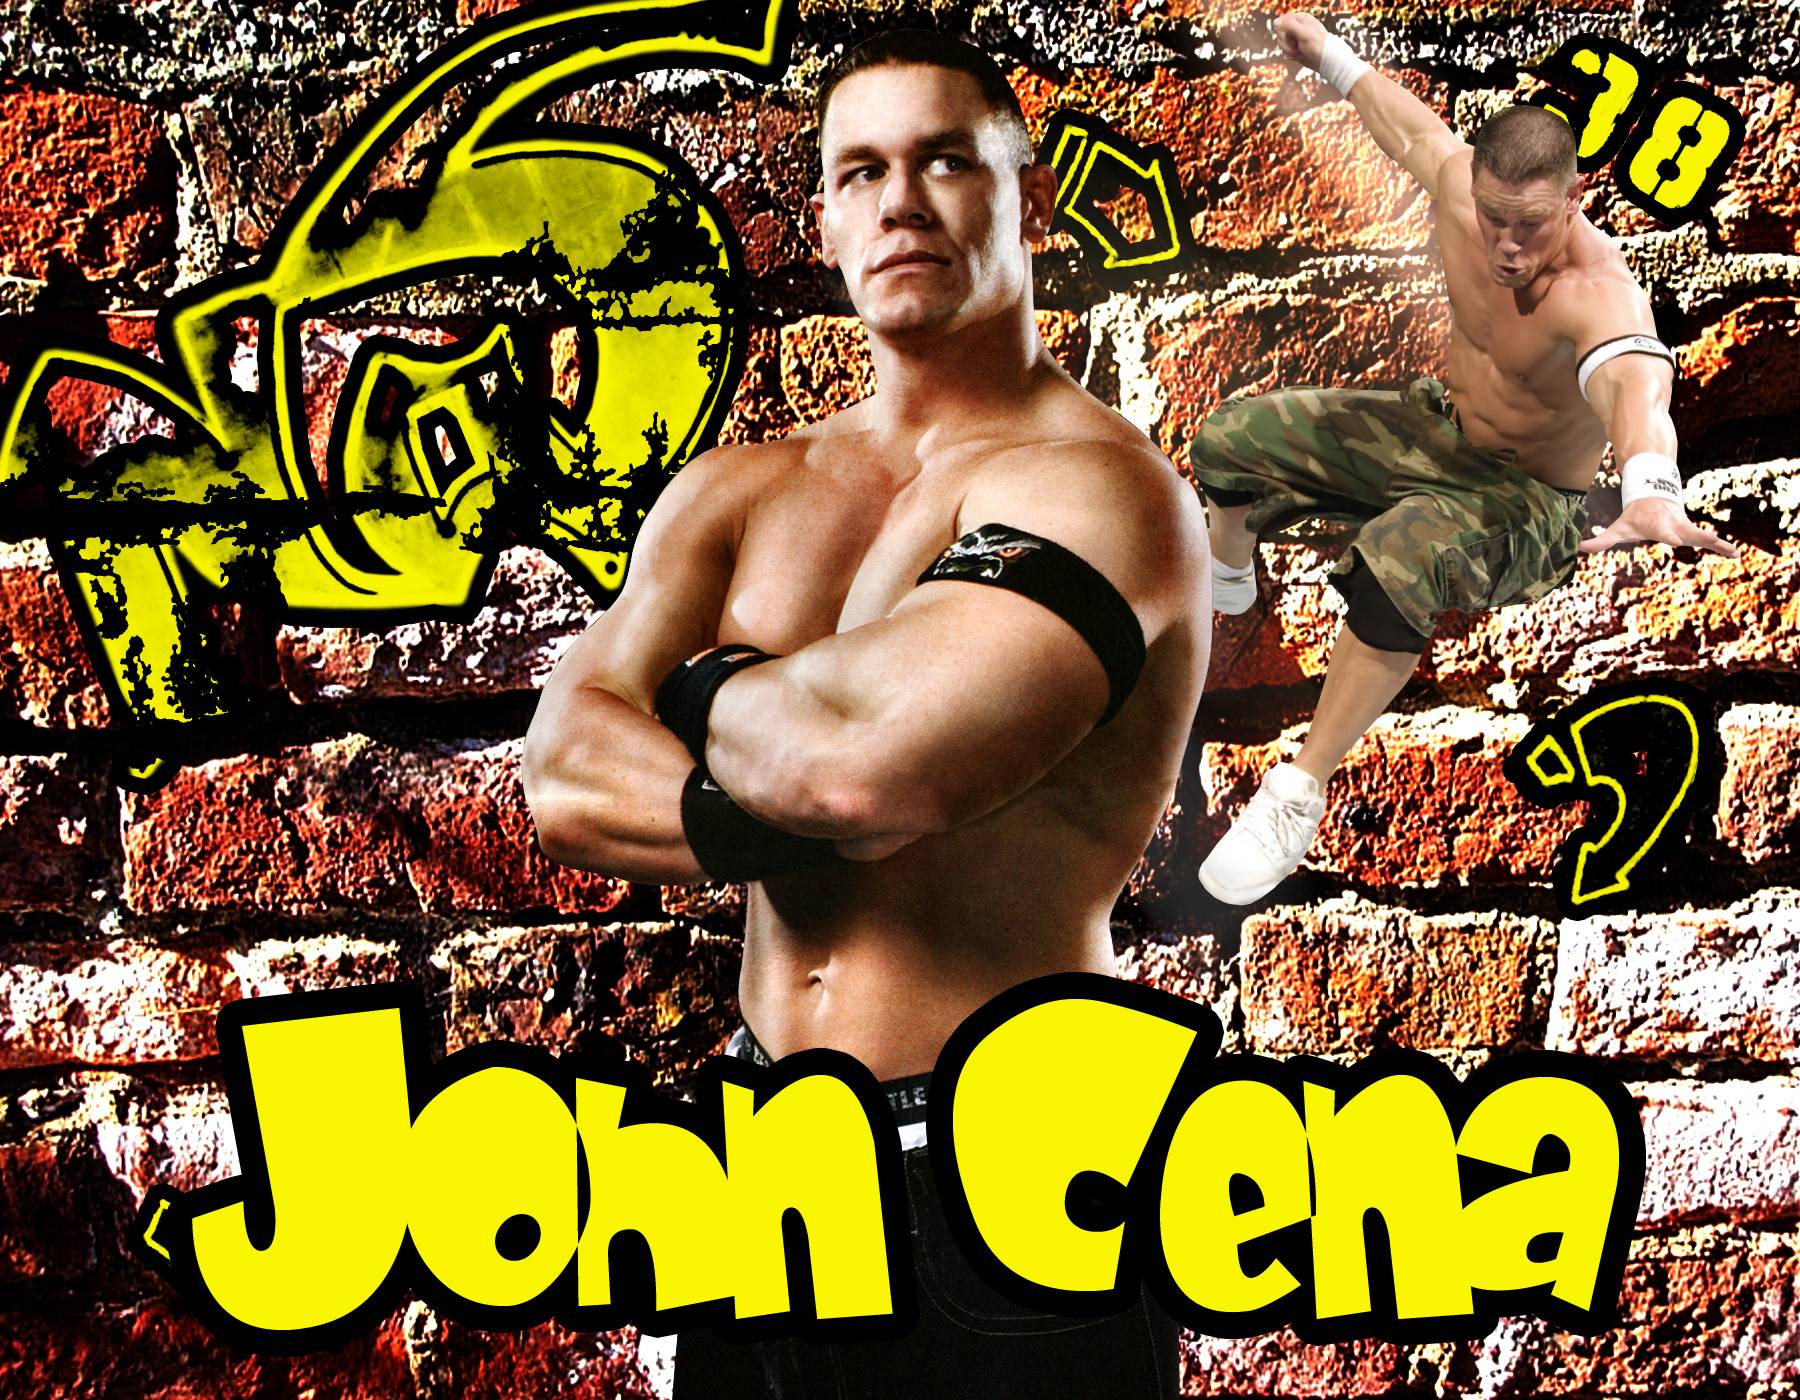 WWE John Cena Background Wallpaper #8731 Wallpaper | ForWallpapers.com